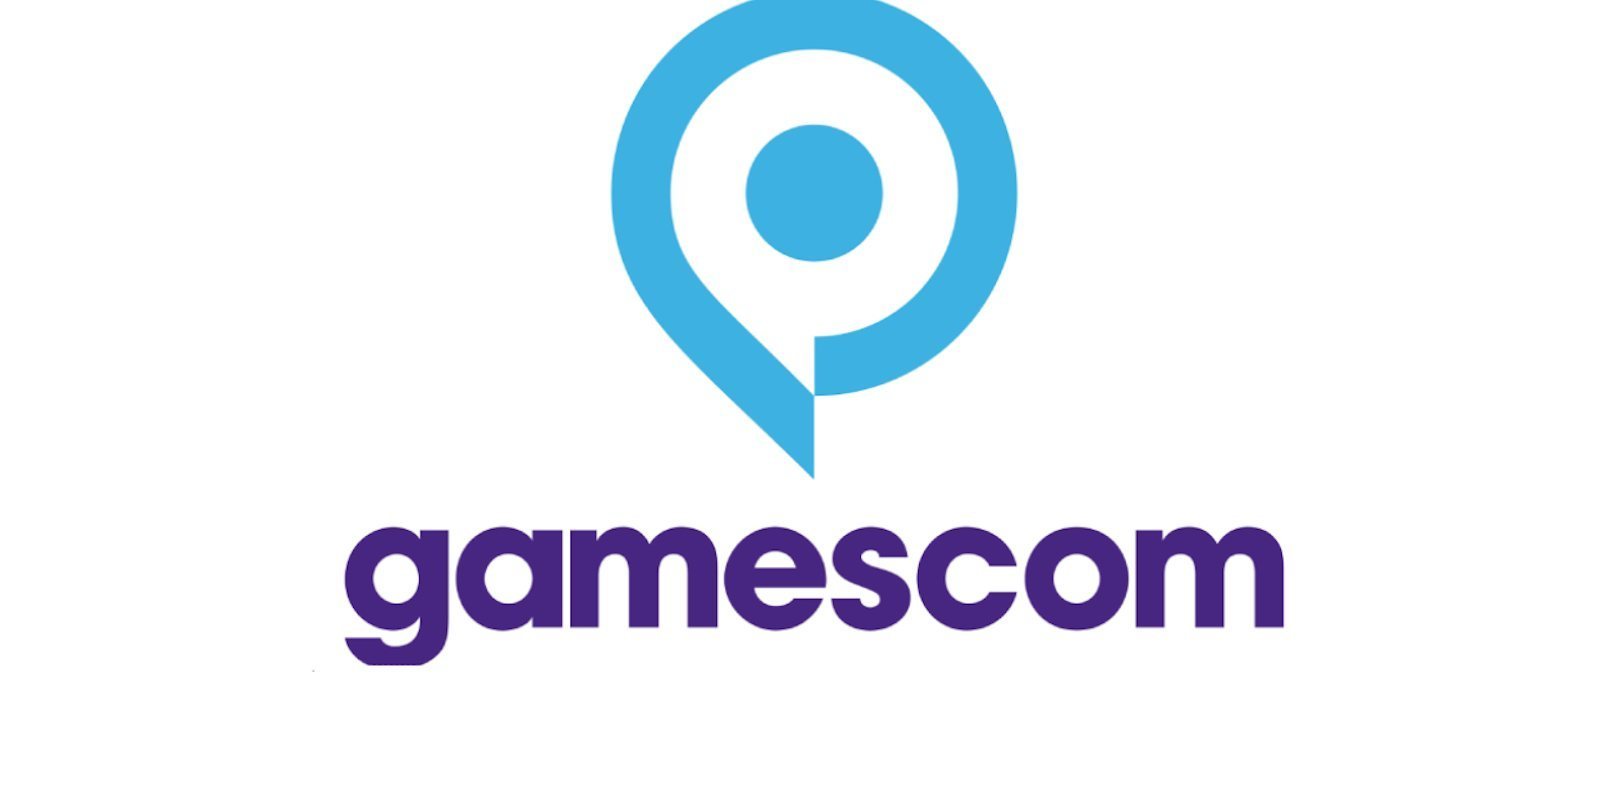 La Gamescom 2020 pasa a ser este año un evento digital